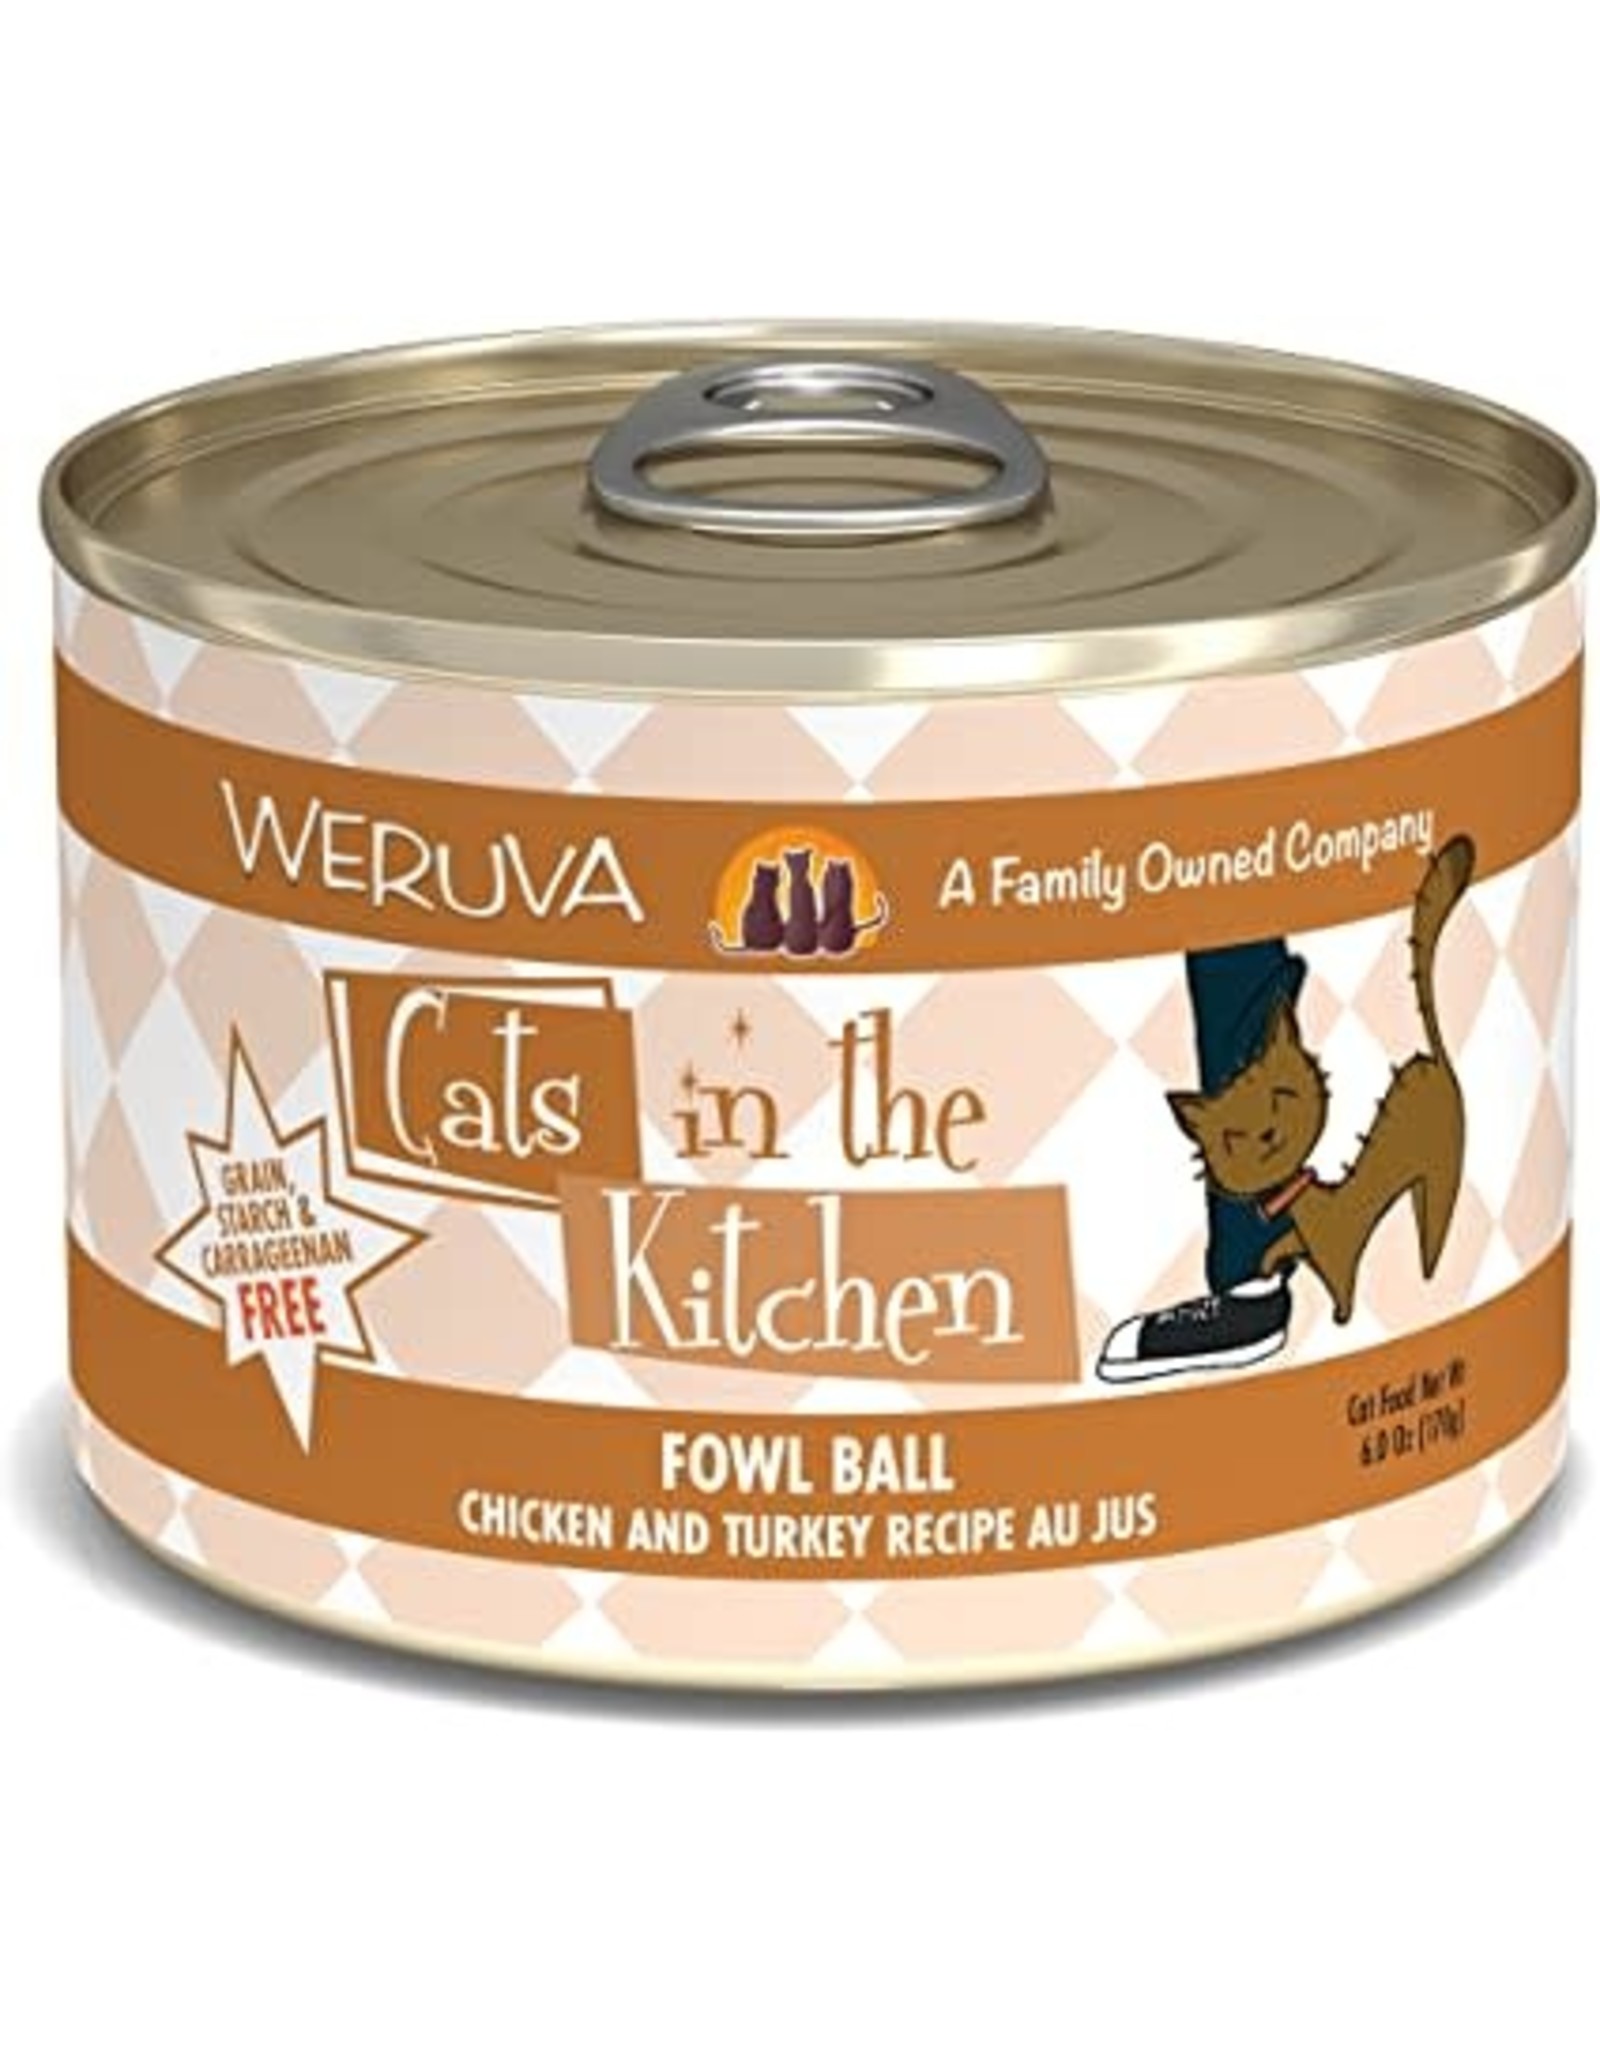 Weruva Weruva Cats in the Kitchen Fowl ball Chicken & Turkey Recipe Au Jus Cat Food 6oz